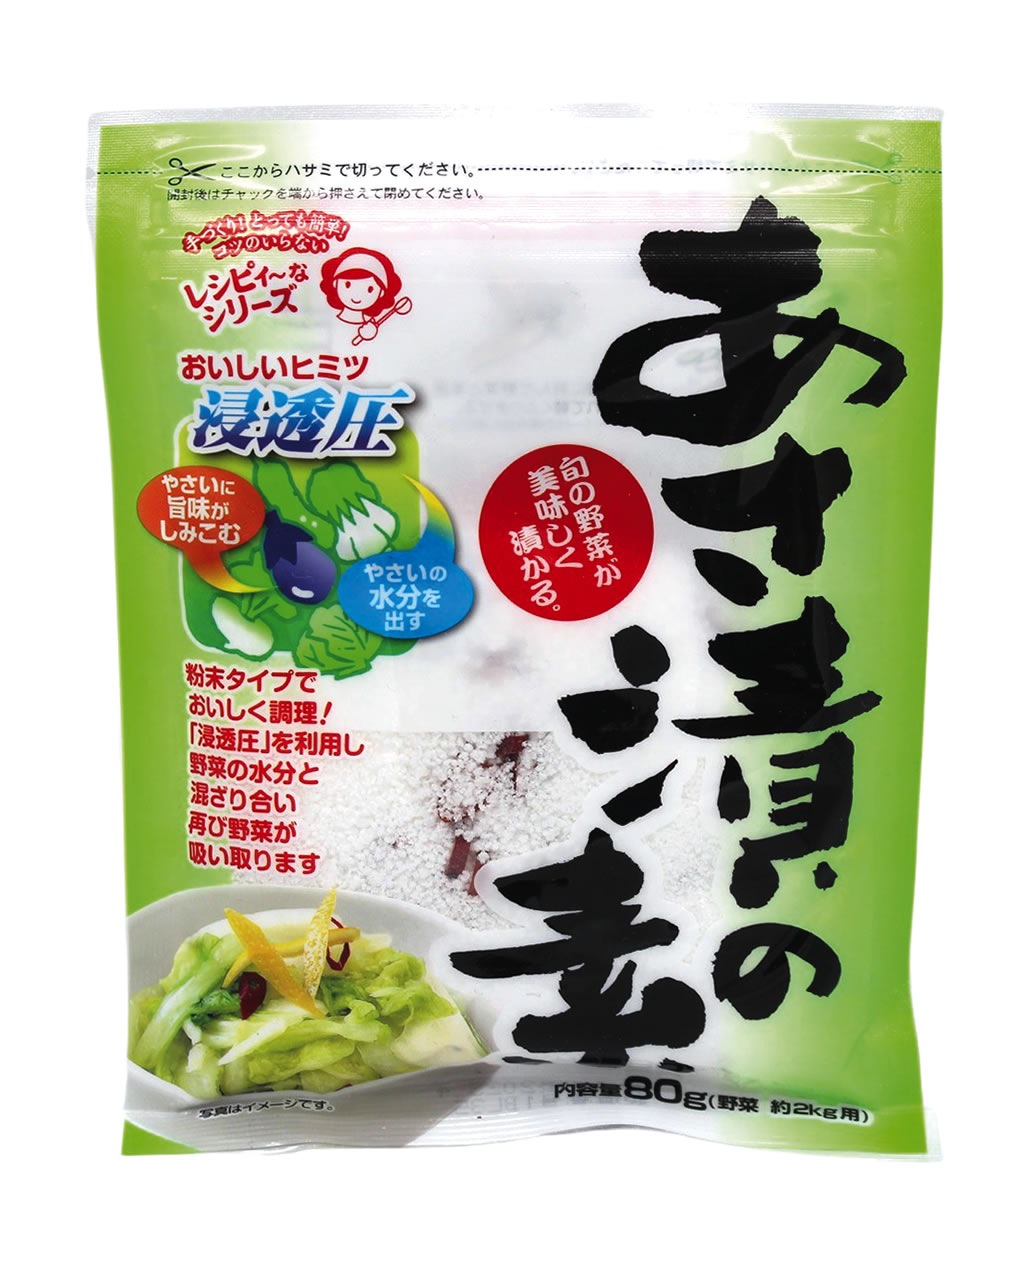 Asazuke-Marinade für Gemüse, 80 g